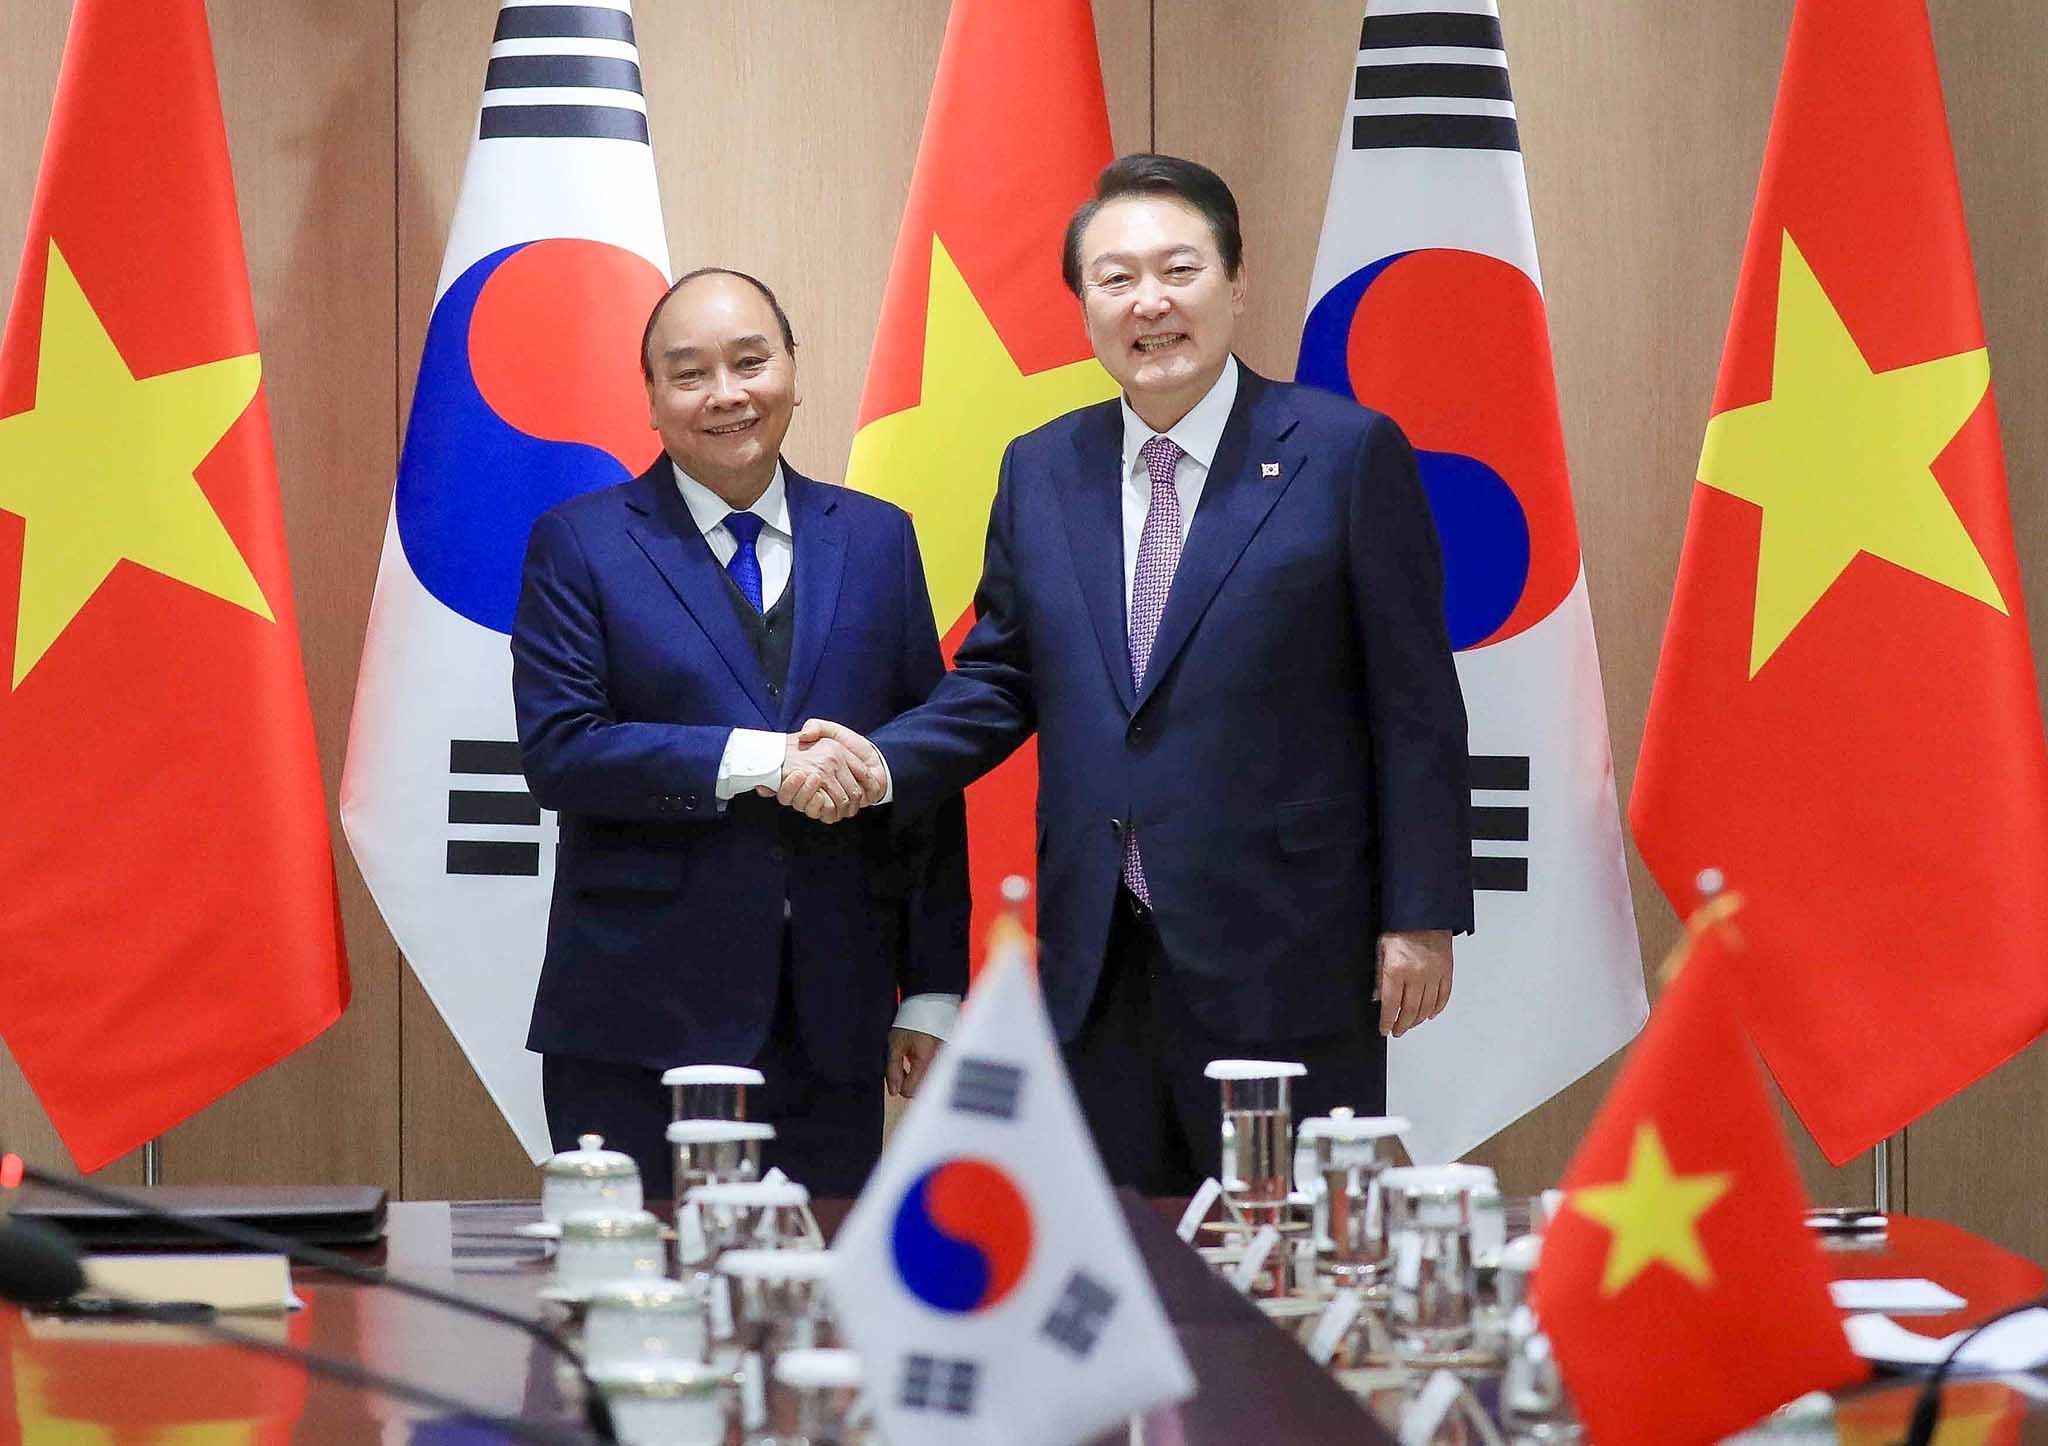 Lễ ký văn kiện với Hàn Quốc: Lễ ký kết giữa Việt Nam và Hàn Quốc đánh dấu sự củng cố thêm cho quan hệ giữa hai nước. Văn kiện ký kết tập trung vào việc thúc đẩy và phát triển quan hệ kinh tế - thương mại, giảm thiểu thương mại không công bằng và đầu tư trực tiếp nước ngoài. Hãy tìm hiểu thêm thông tin về sự kiện trọng đại này.